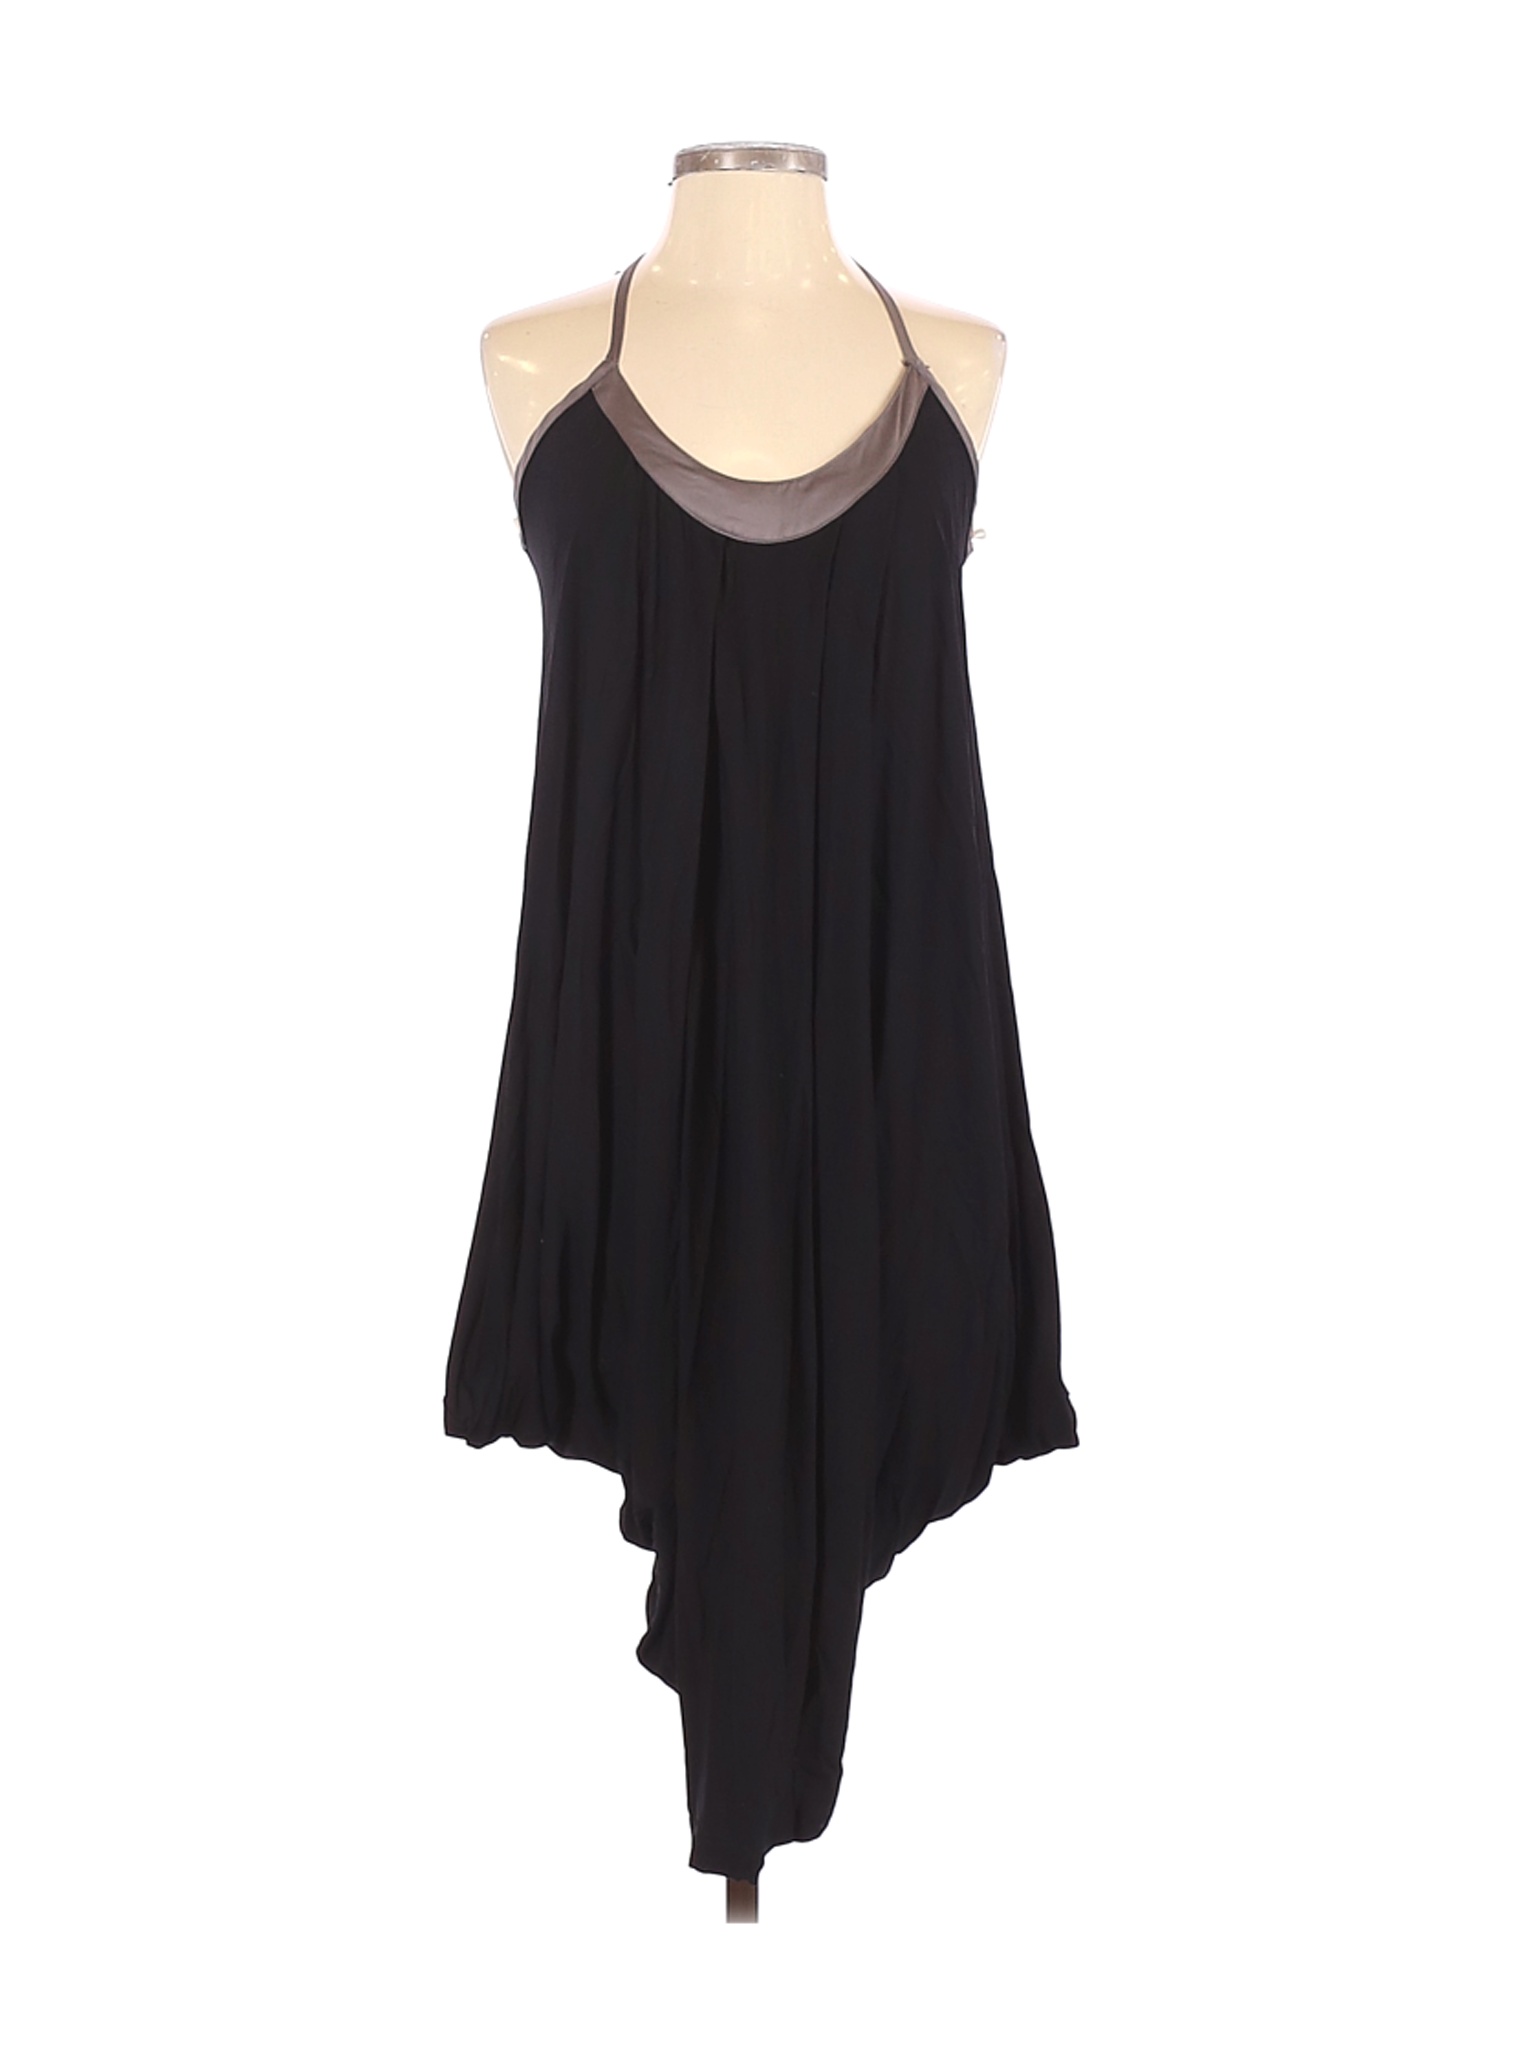 Forever Women Black Casual Dress S | eBay